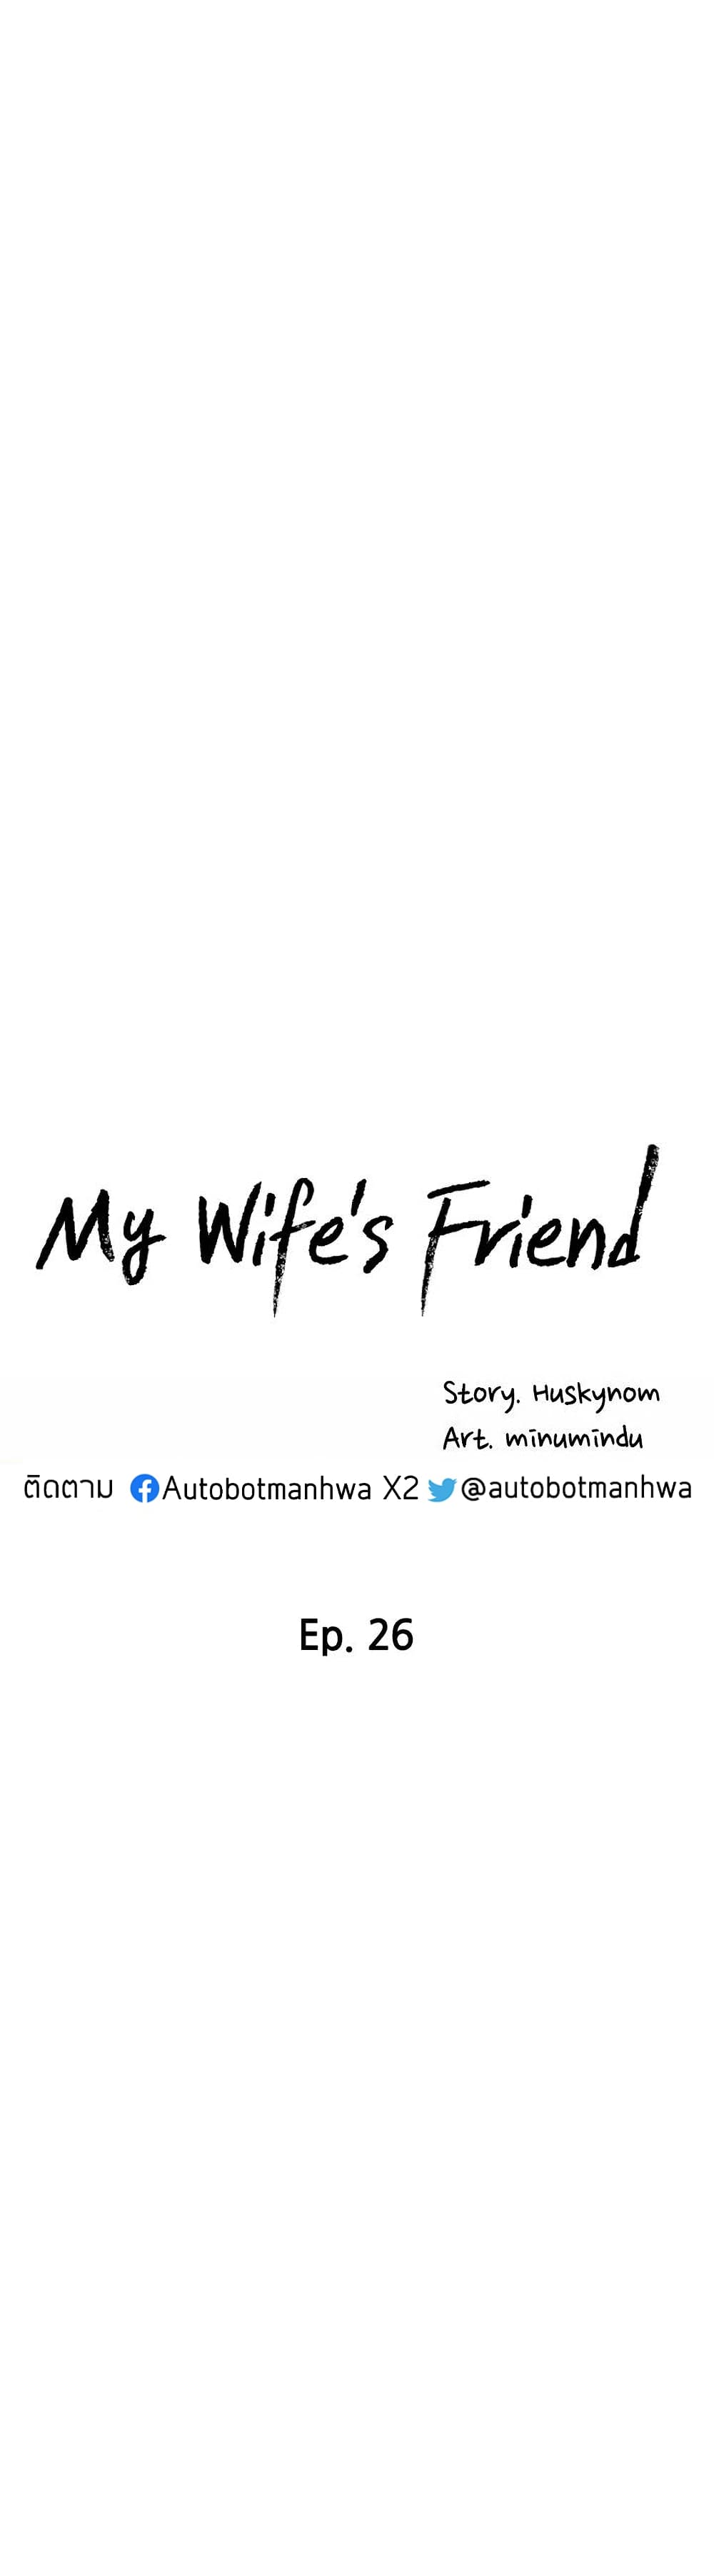 My Wife’s Friend 27 05